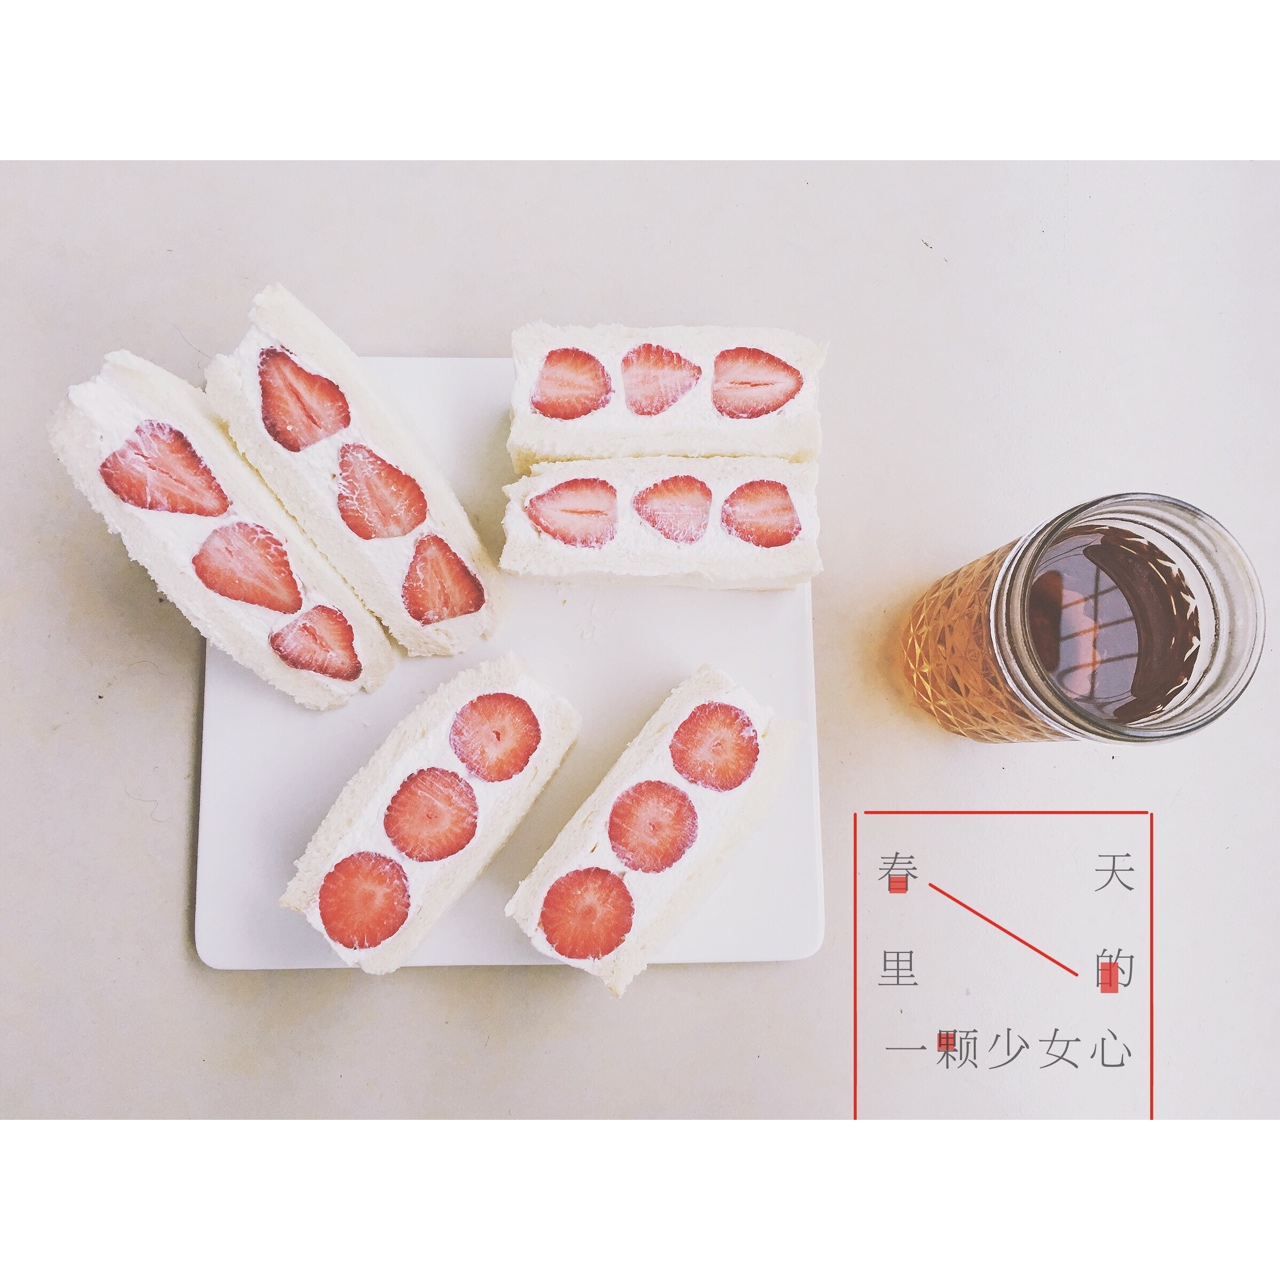 草莓的3+1种有爱吃法「厨娘物语」